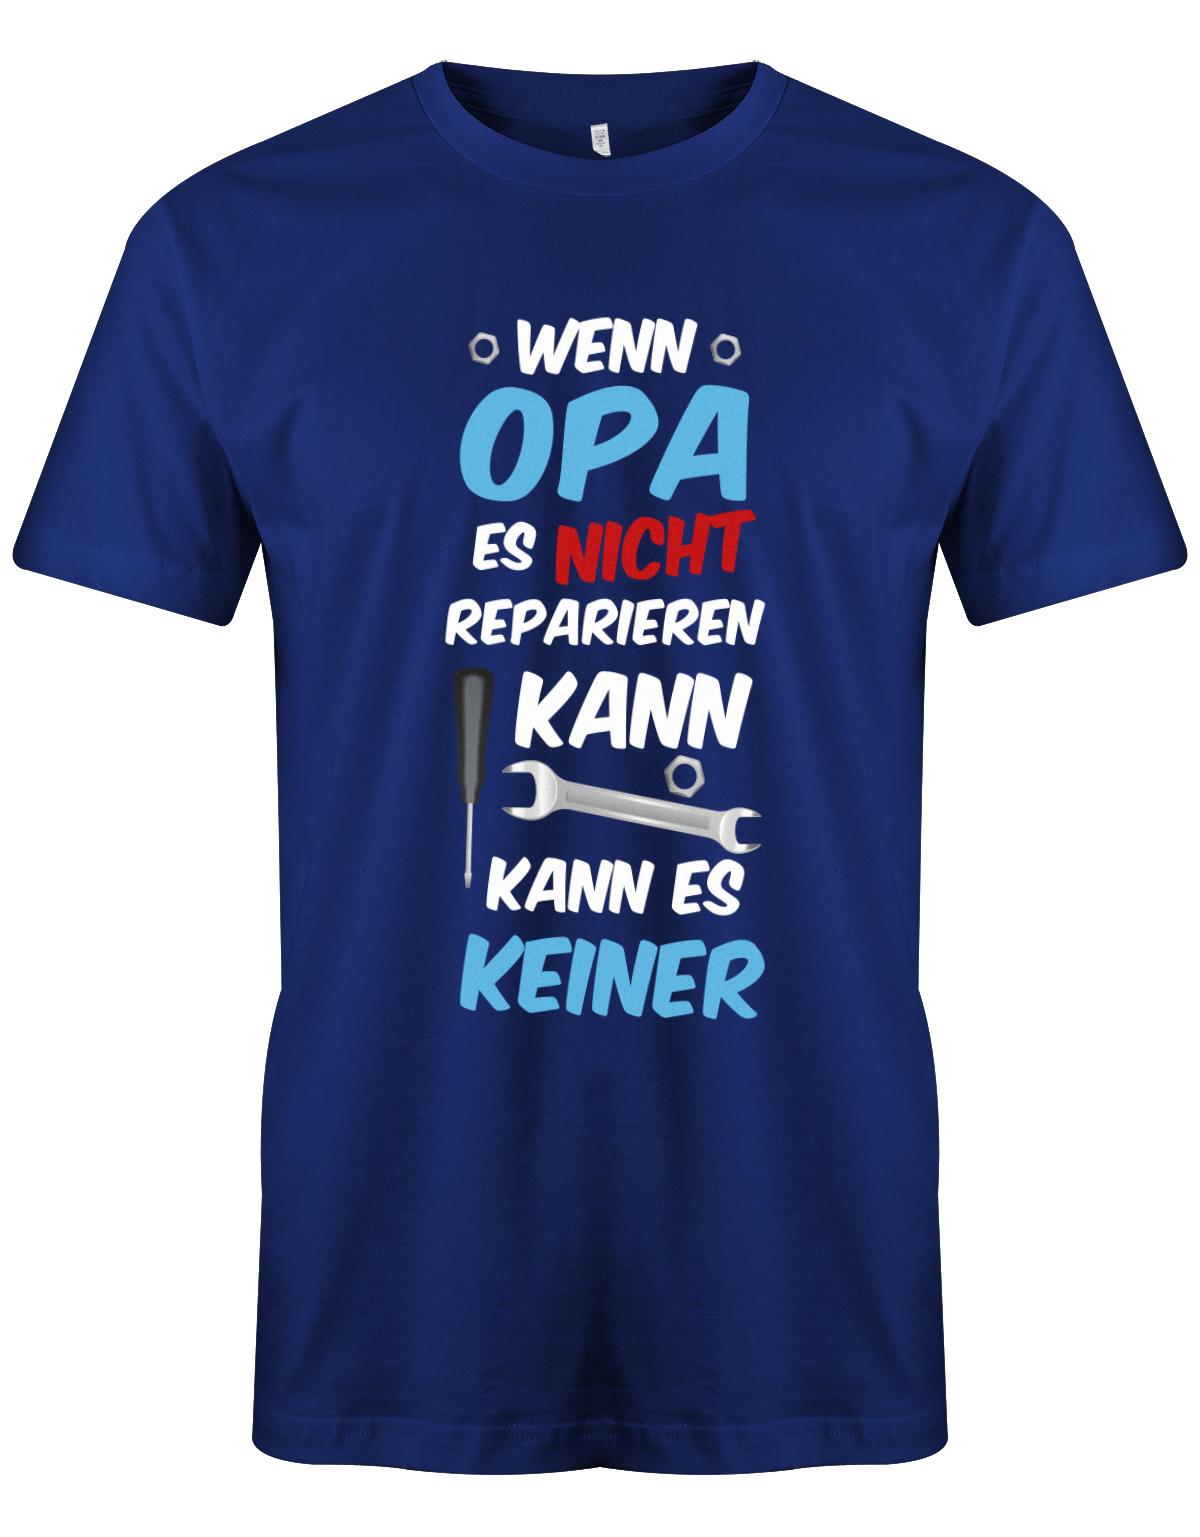 Opa T-Shirt – Wenn Opa es nicht reparieren kann, kann es keiner. Royalblau